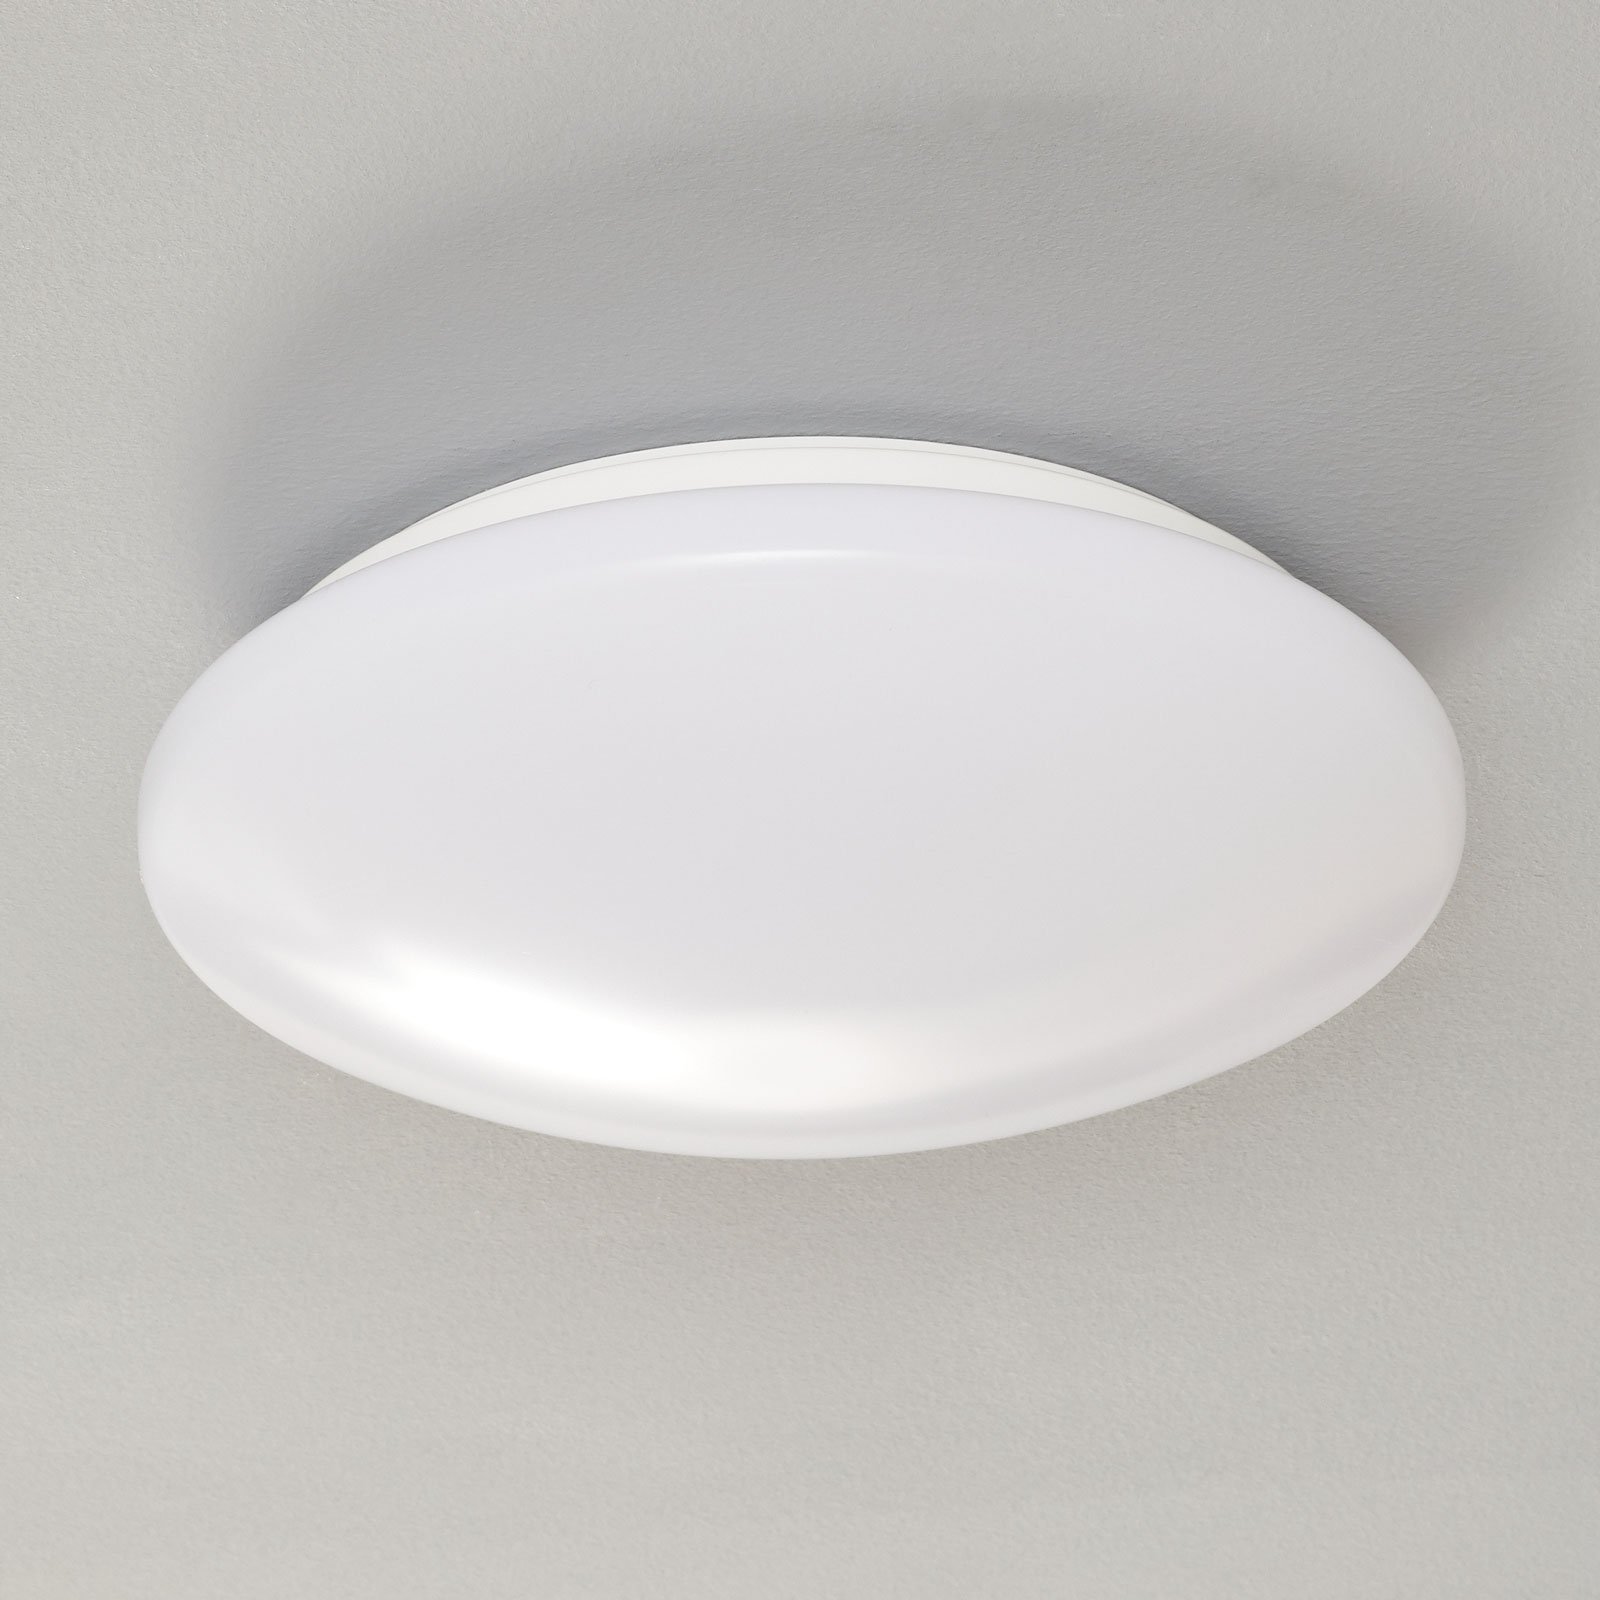 LED stropní svítidlo Pollux, senzor pohybu, Ø 27cm